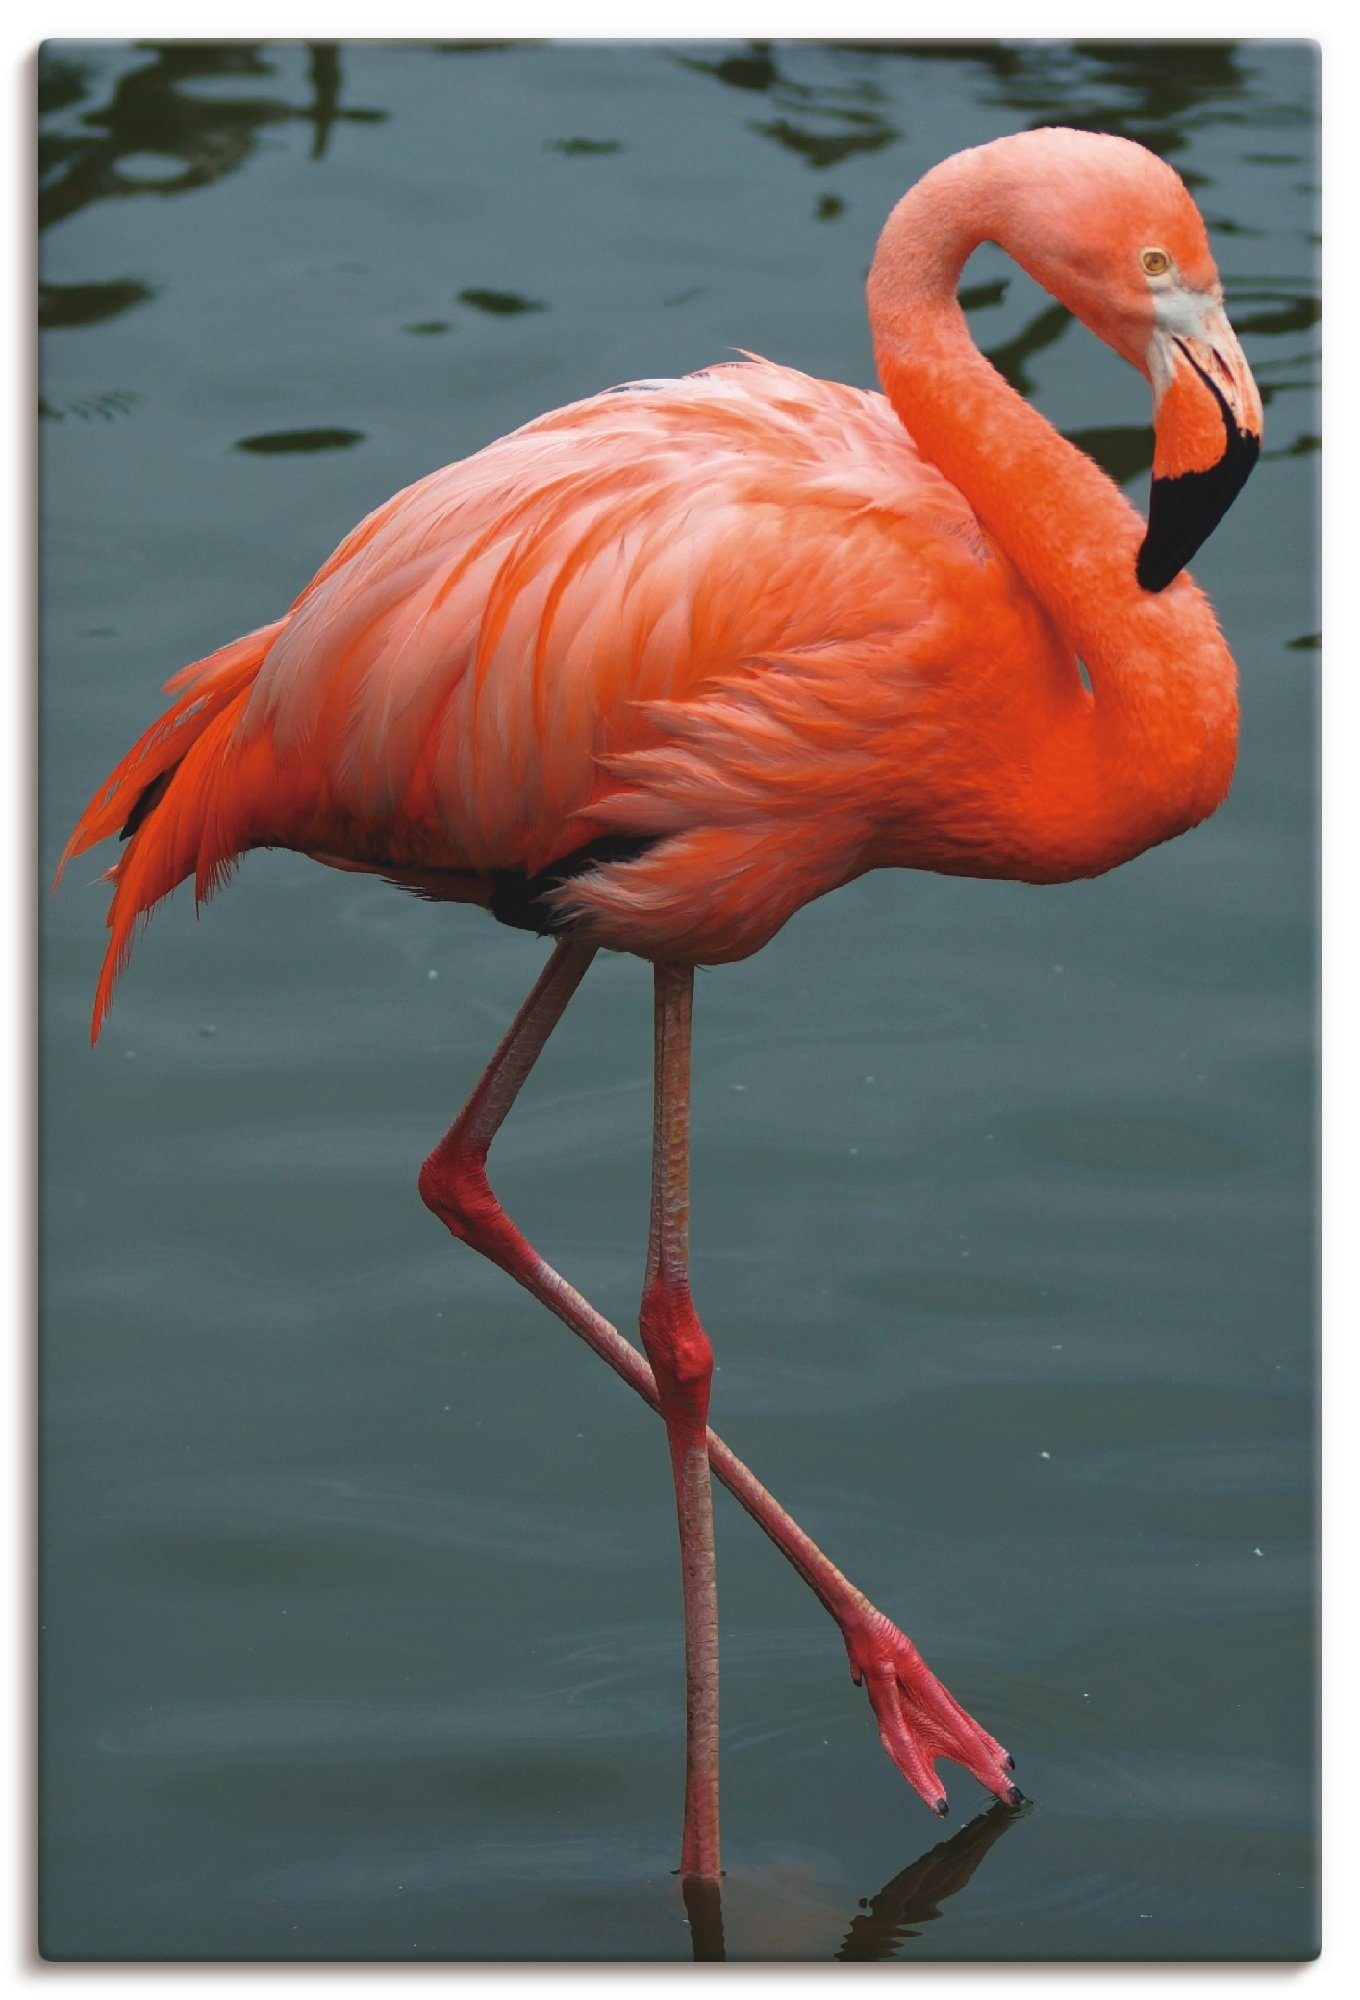 Artland Artprint Flamingo Balans in vele afmetingen & productsoorten -artprint op linnen, poster, muursticker / wandfolie ook geschikt voor de badkamer (1 stuk)